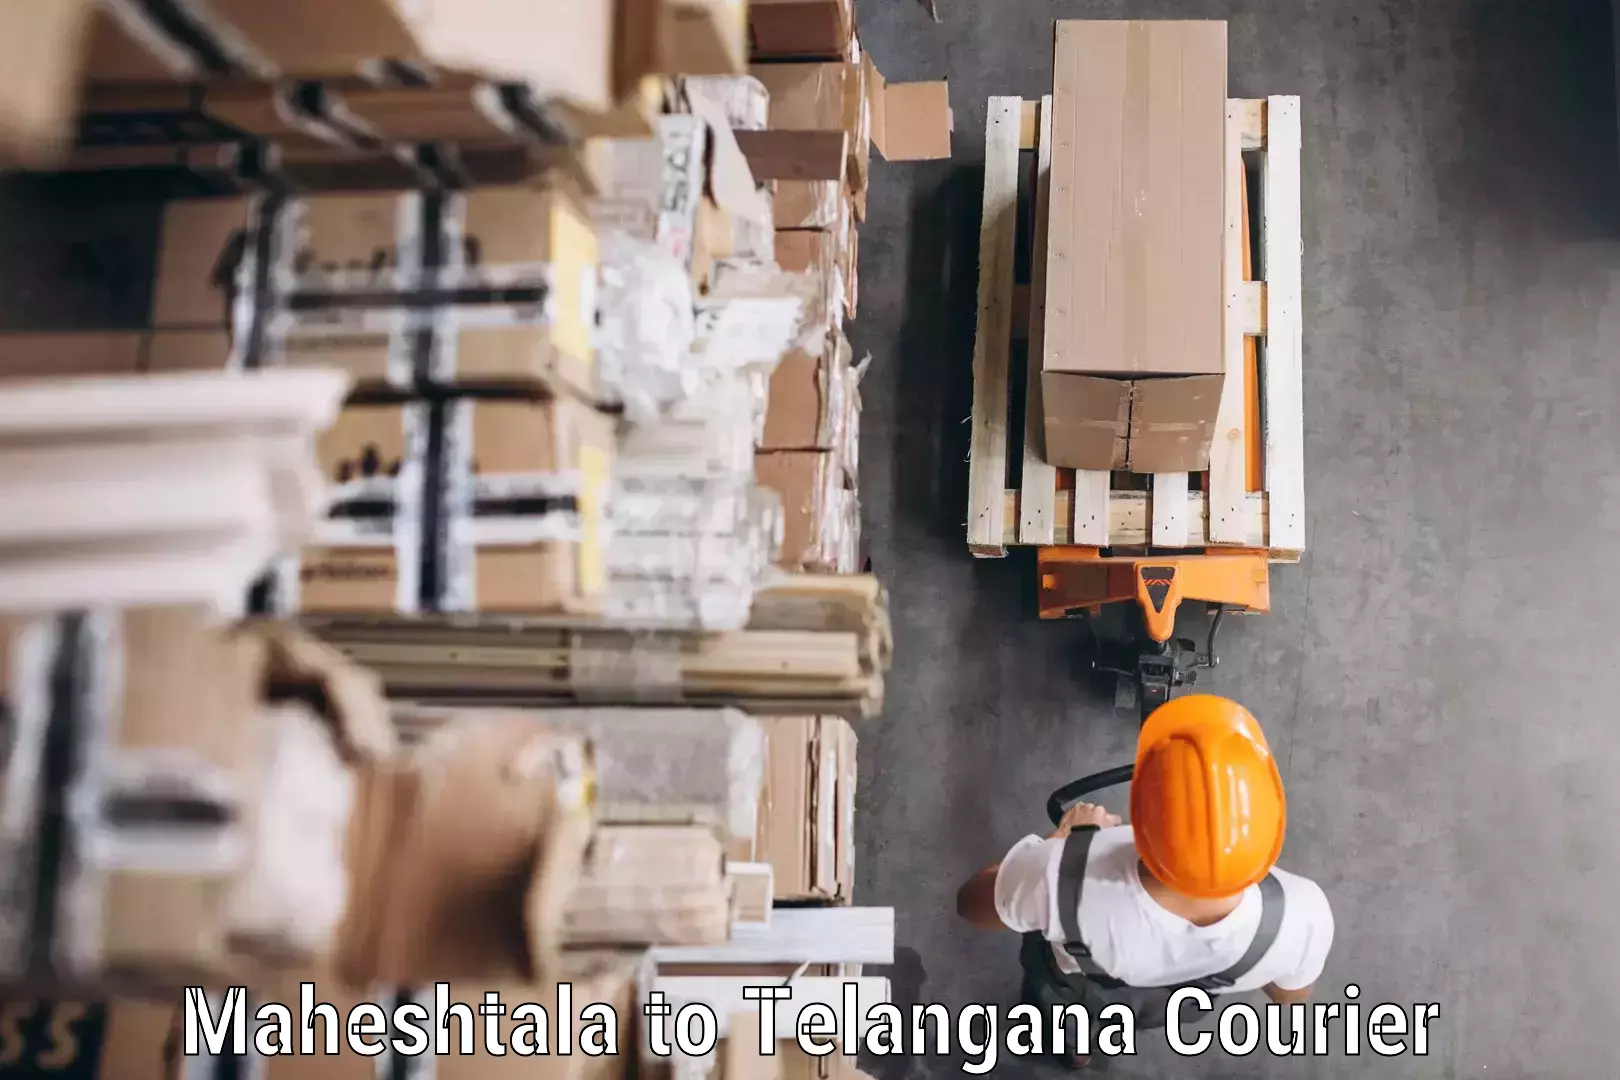 Affordable parcel service Maheshtala to Bijinapalle